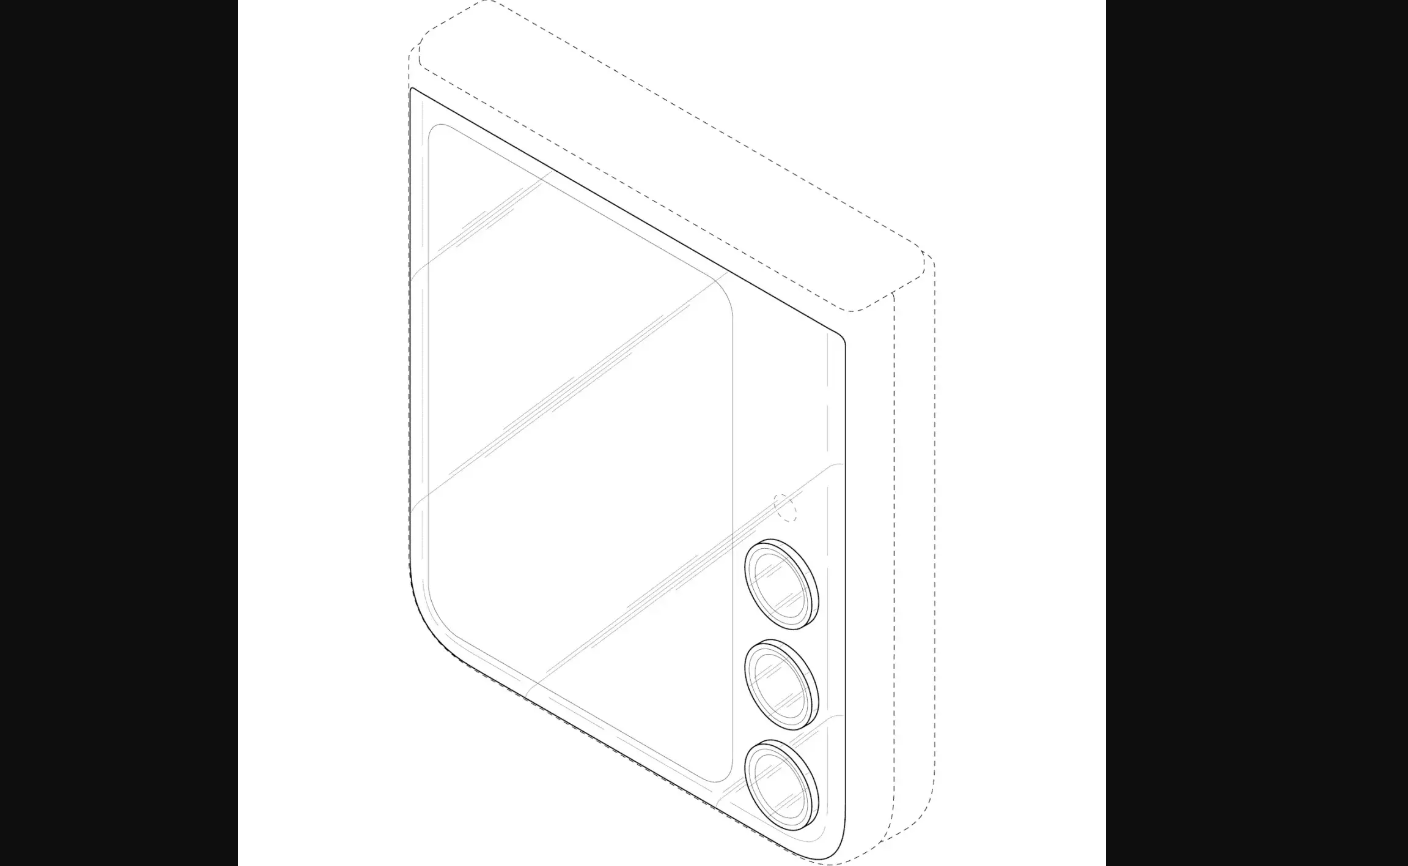 Hình ảnh về bằng sáng chế của Galaxy Z Flip 7.